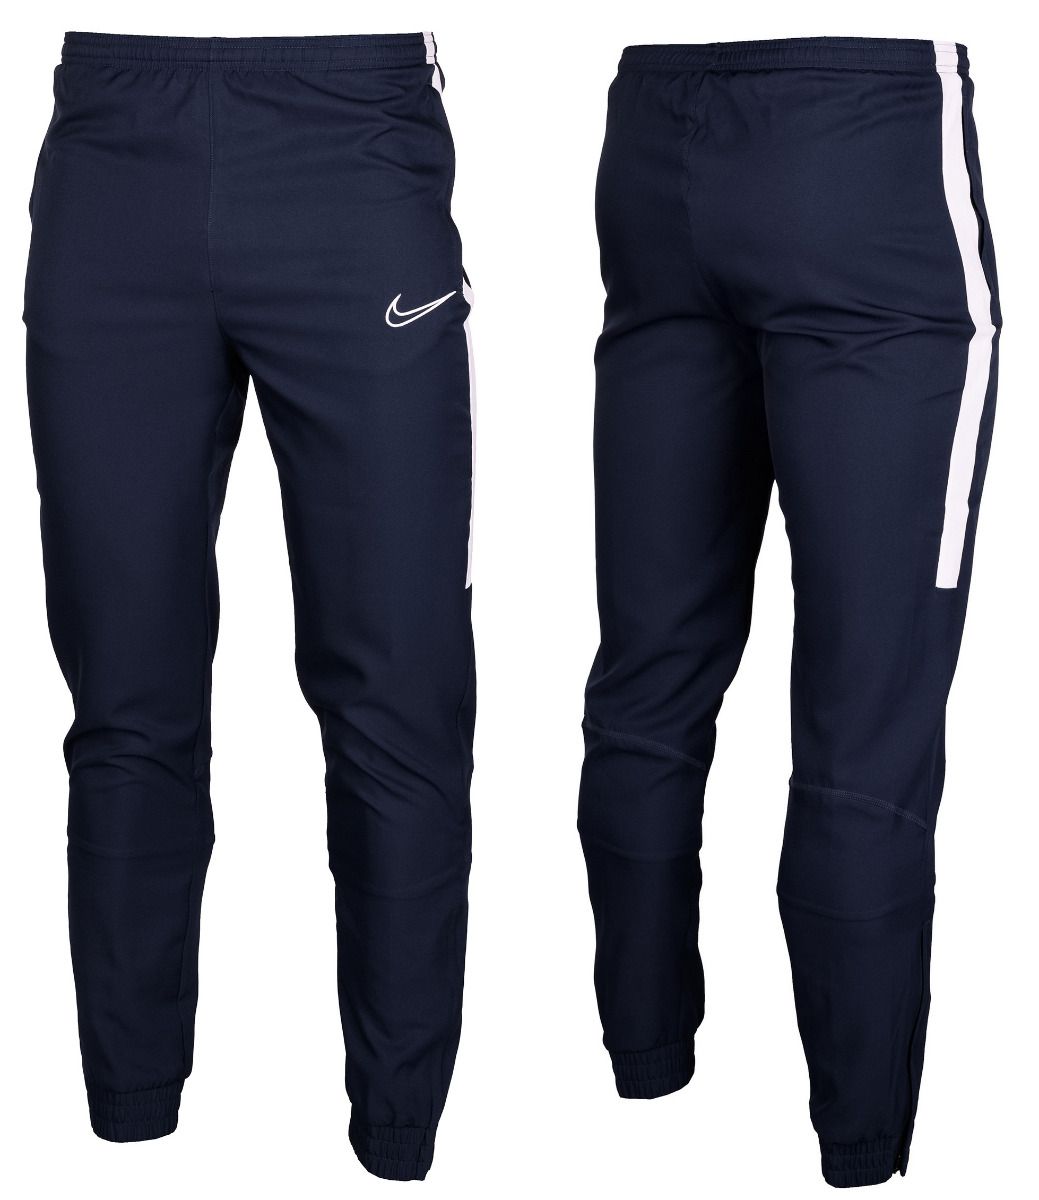 Nike Spodnie Męskie M Dry Academy 19 BV5836 451